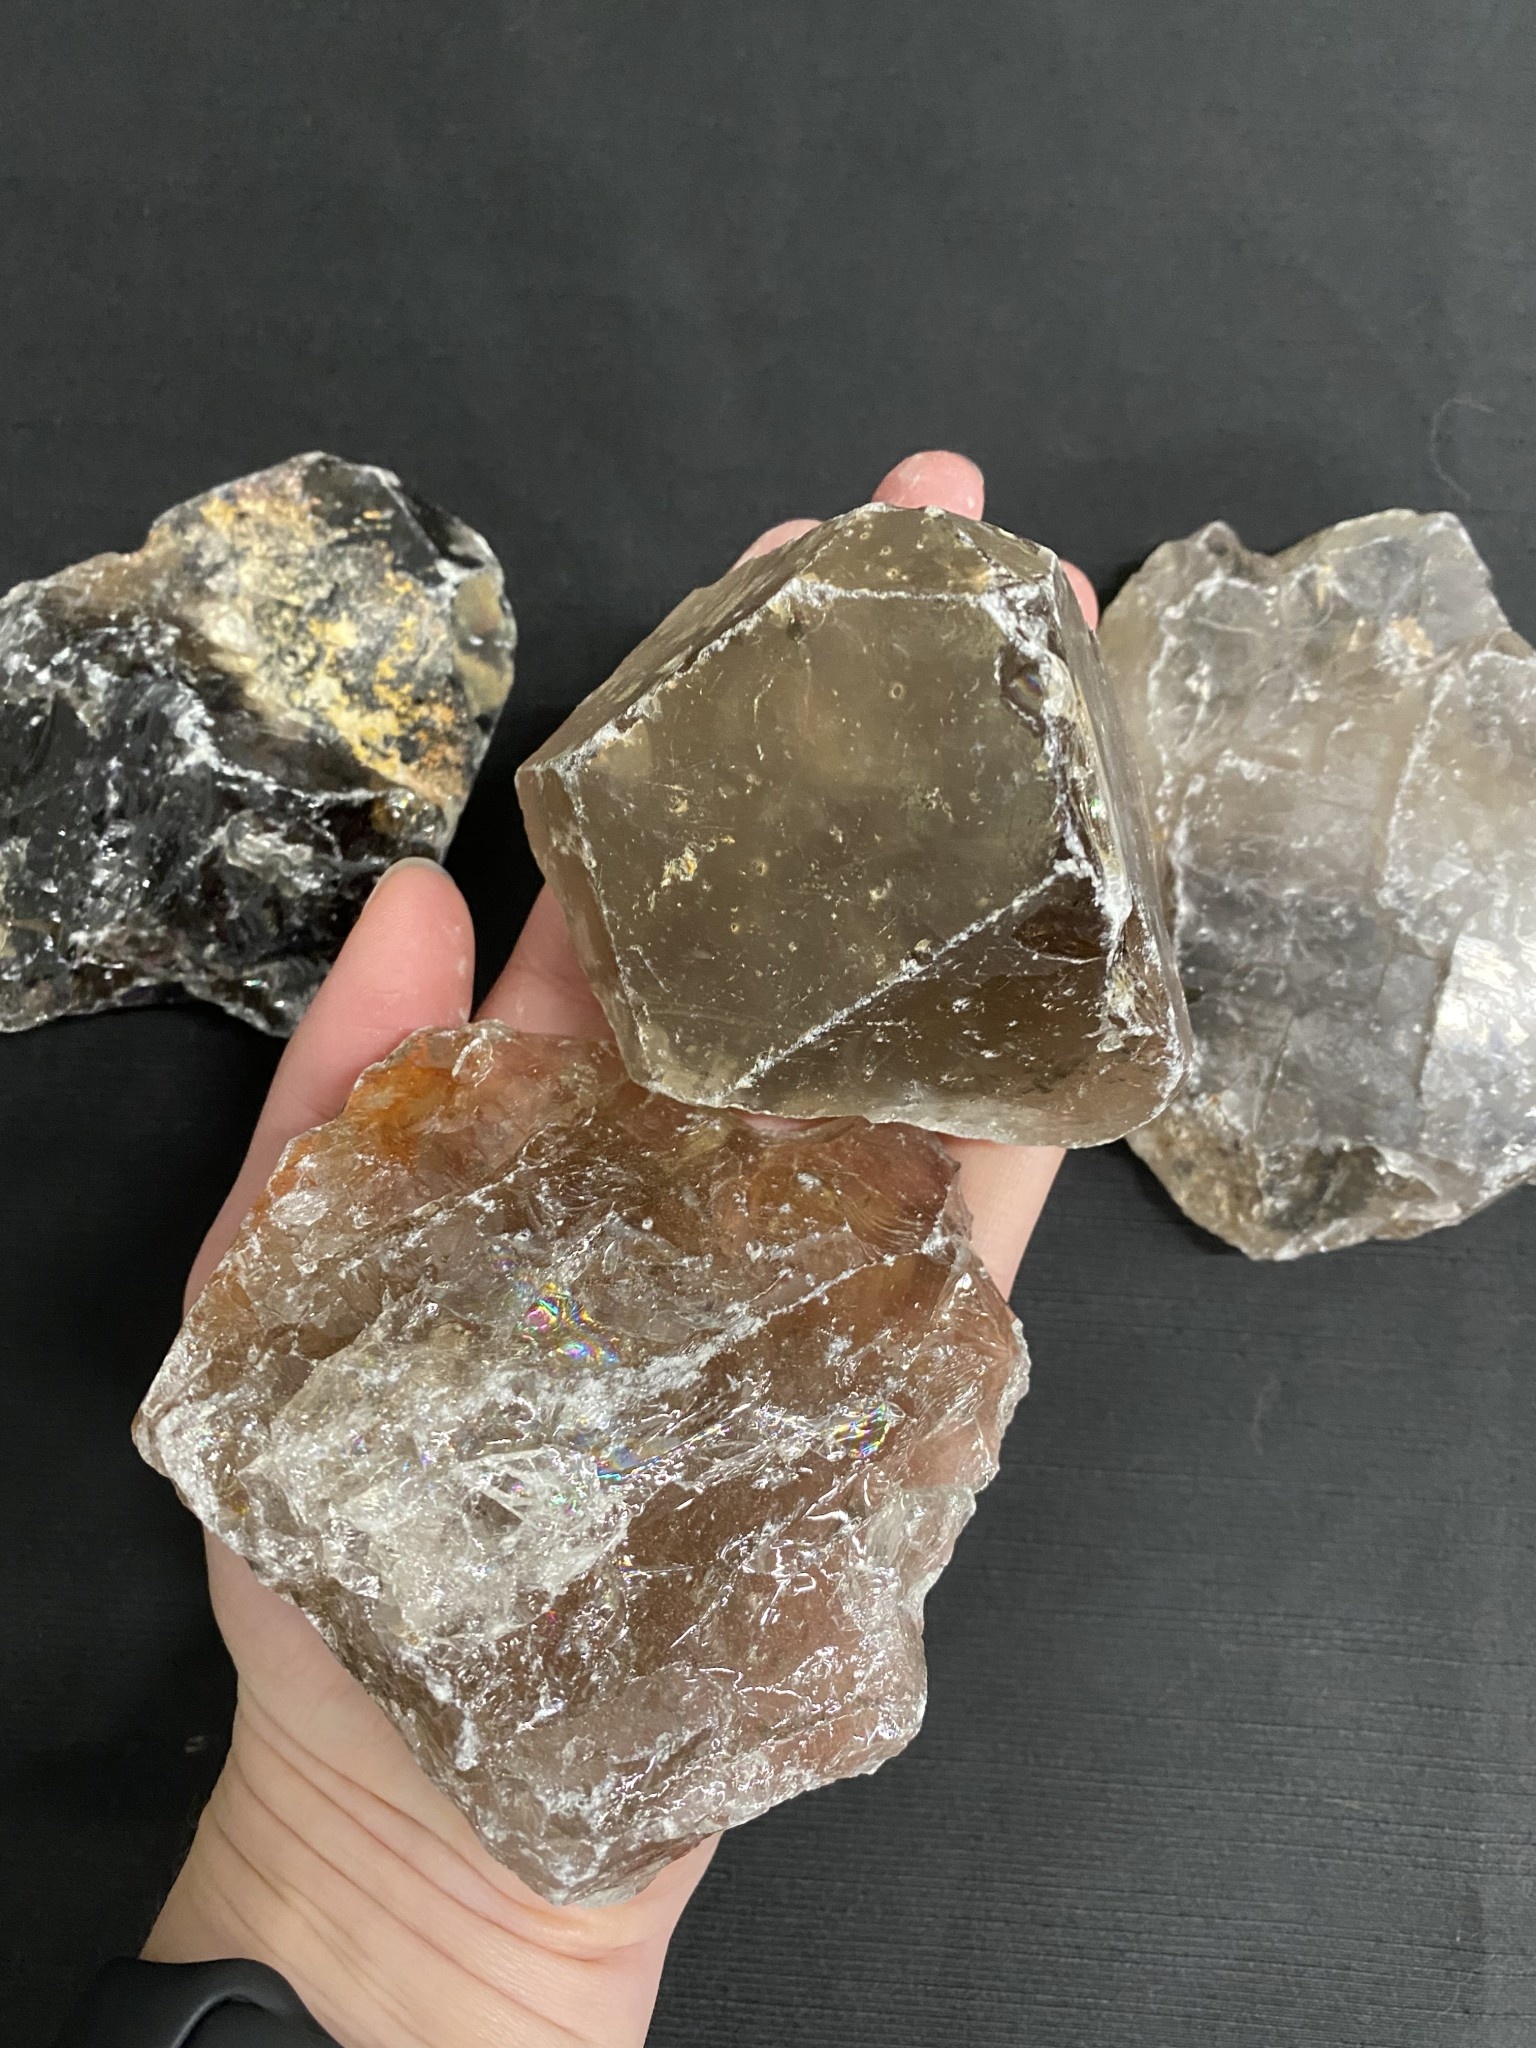 Large Smoky Quartz Rough Natural Stones, 2-4 Raw Smoky Quartz Crystals